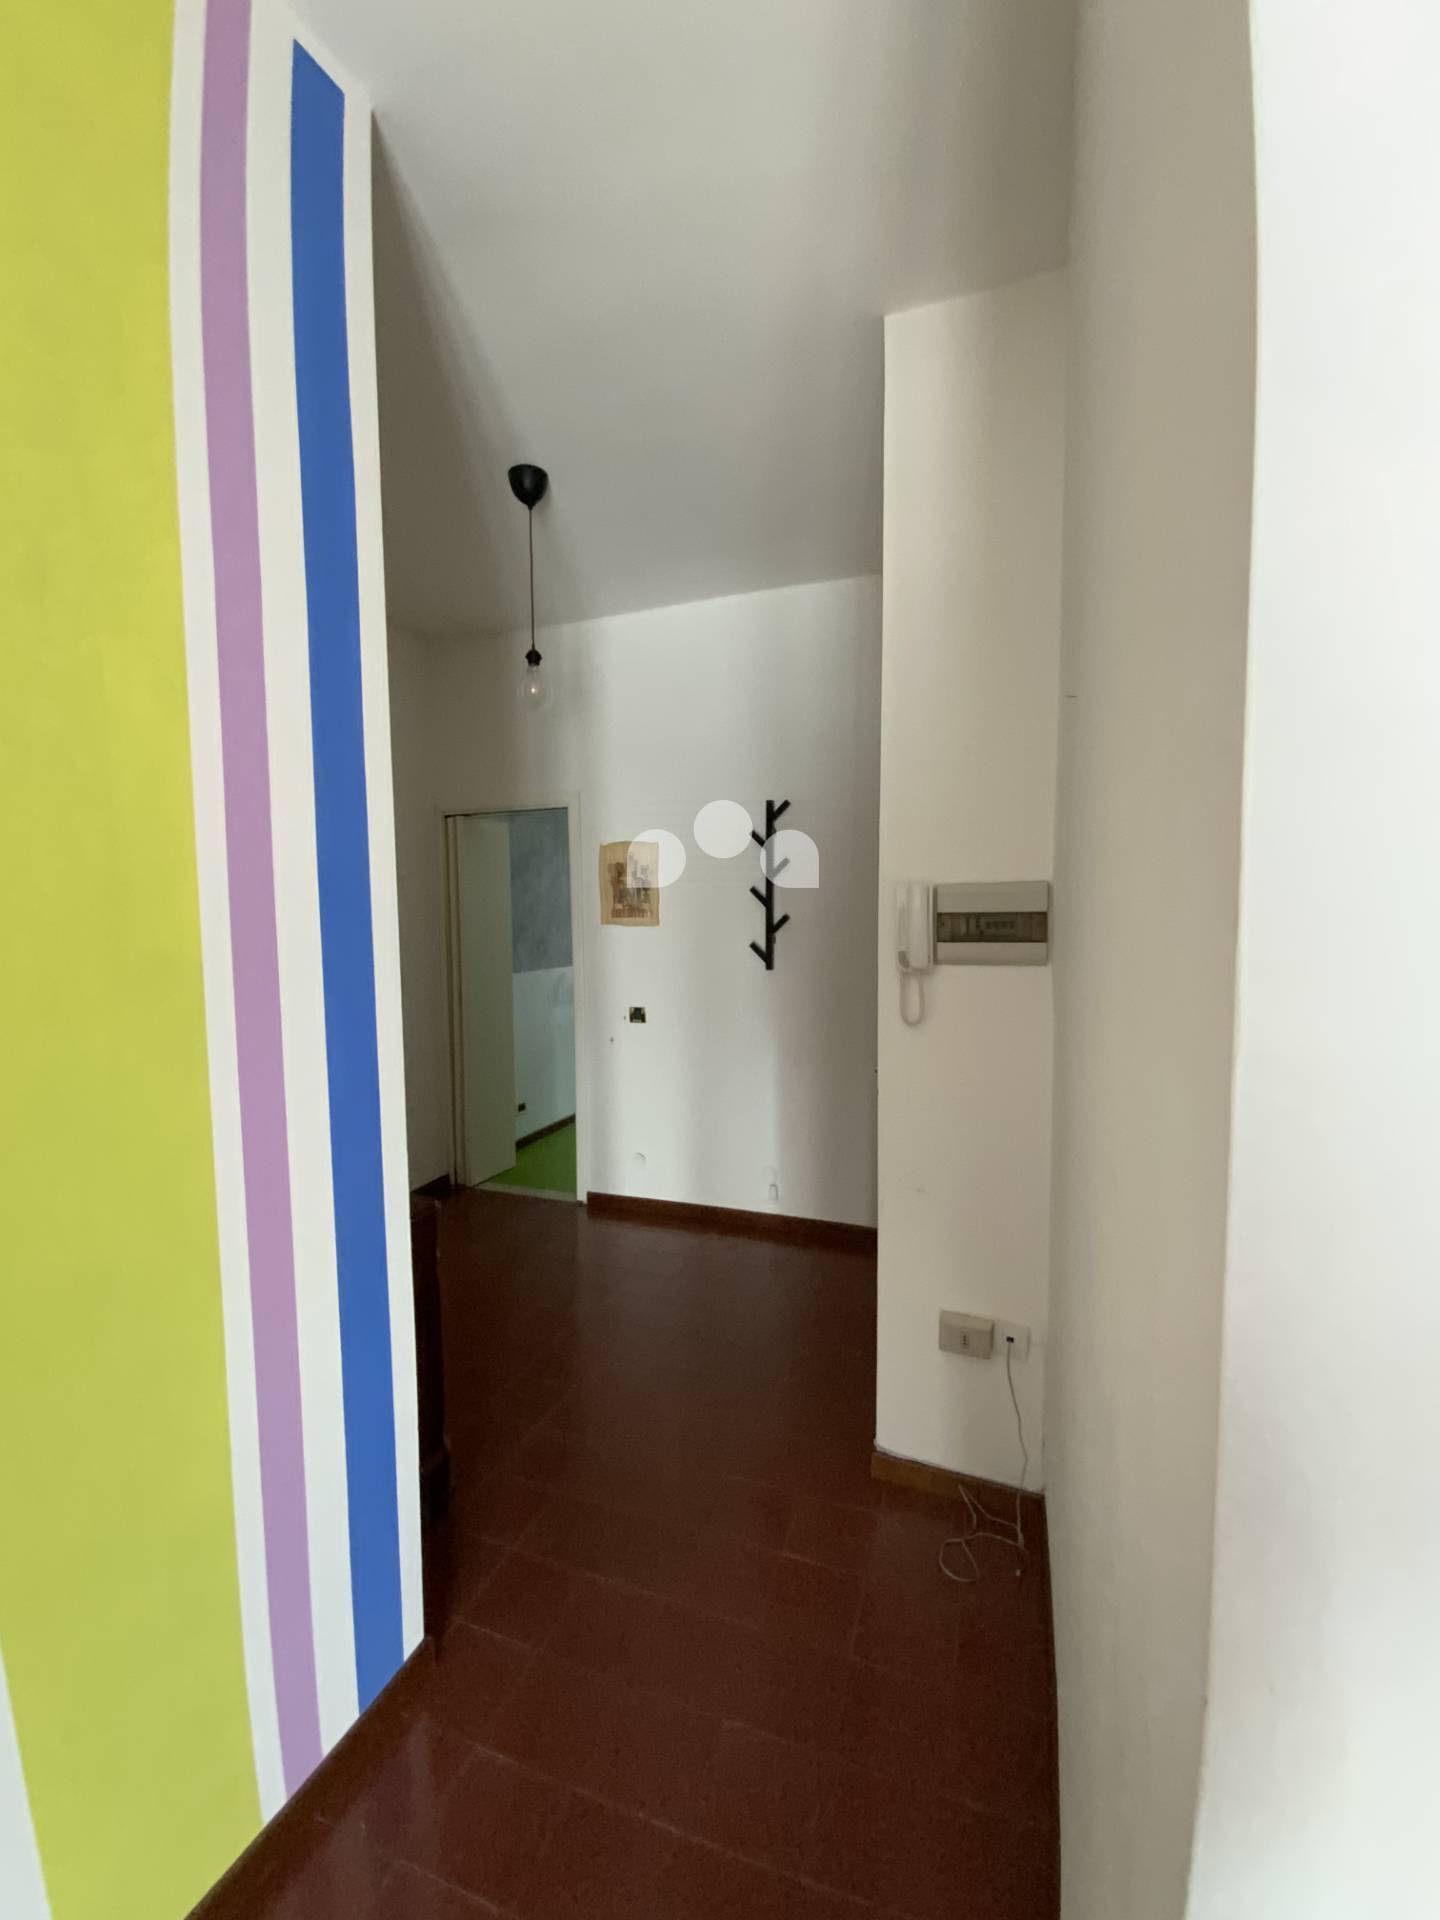 Appartamento in vendita a Soresina, 2 locali, prezzo € 62.000 | CambioCasa.it